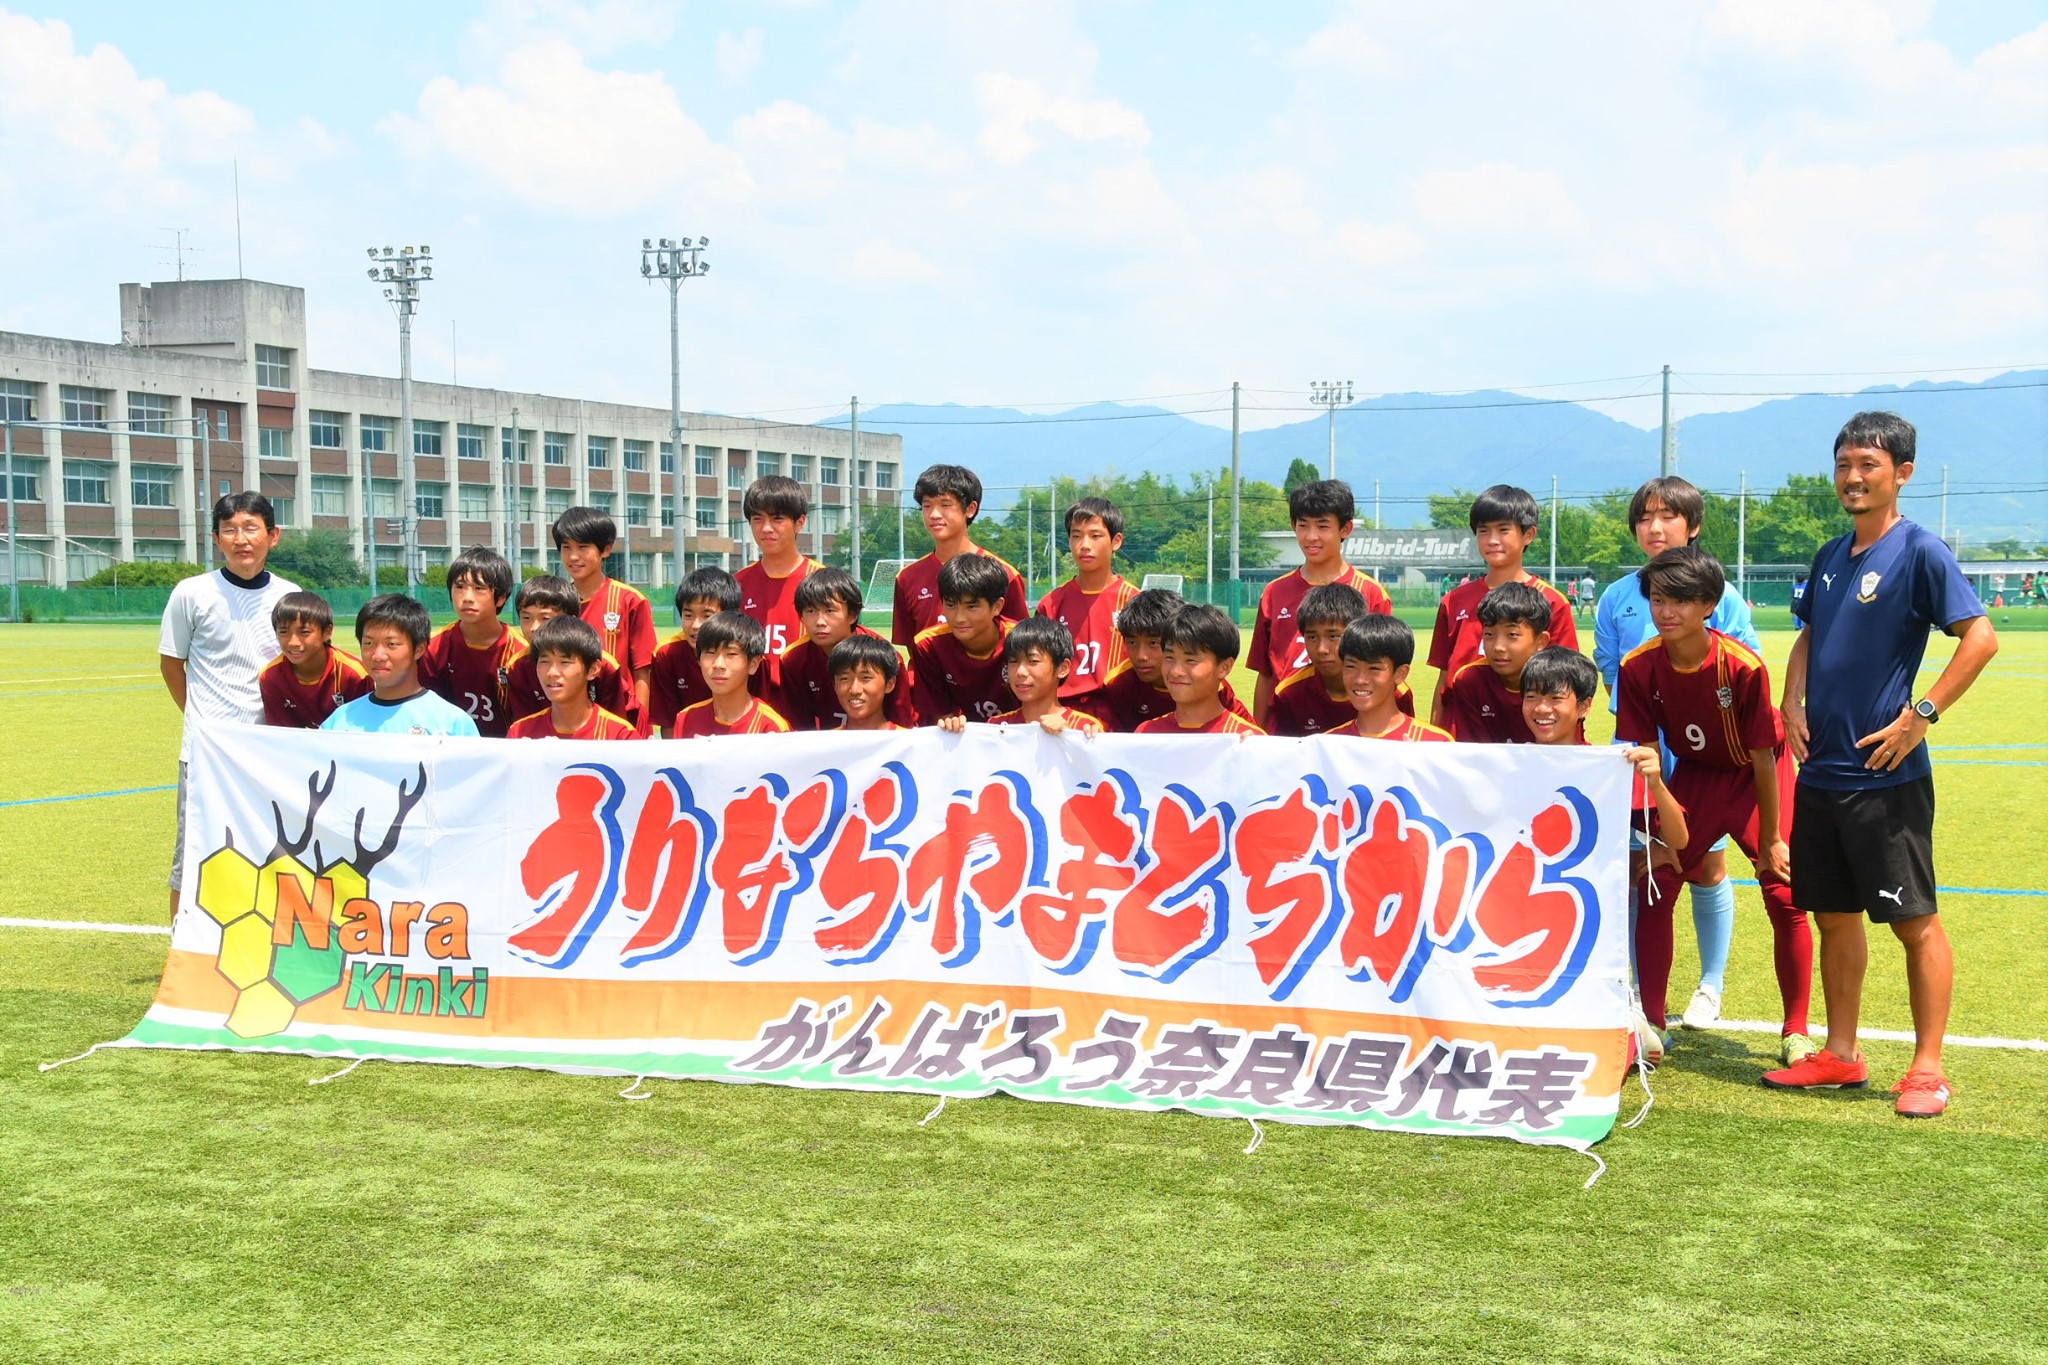 21年度 第72回奈良県中学校総合体育大会 サッカーの部 優勝は上中学校 ジュニアサッカーnews